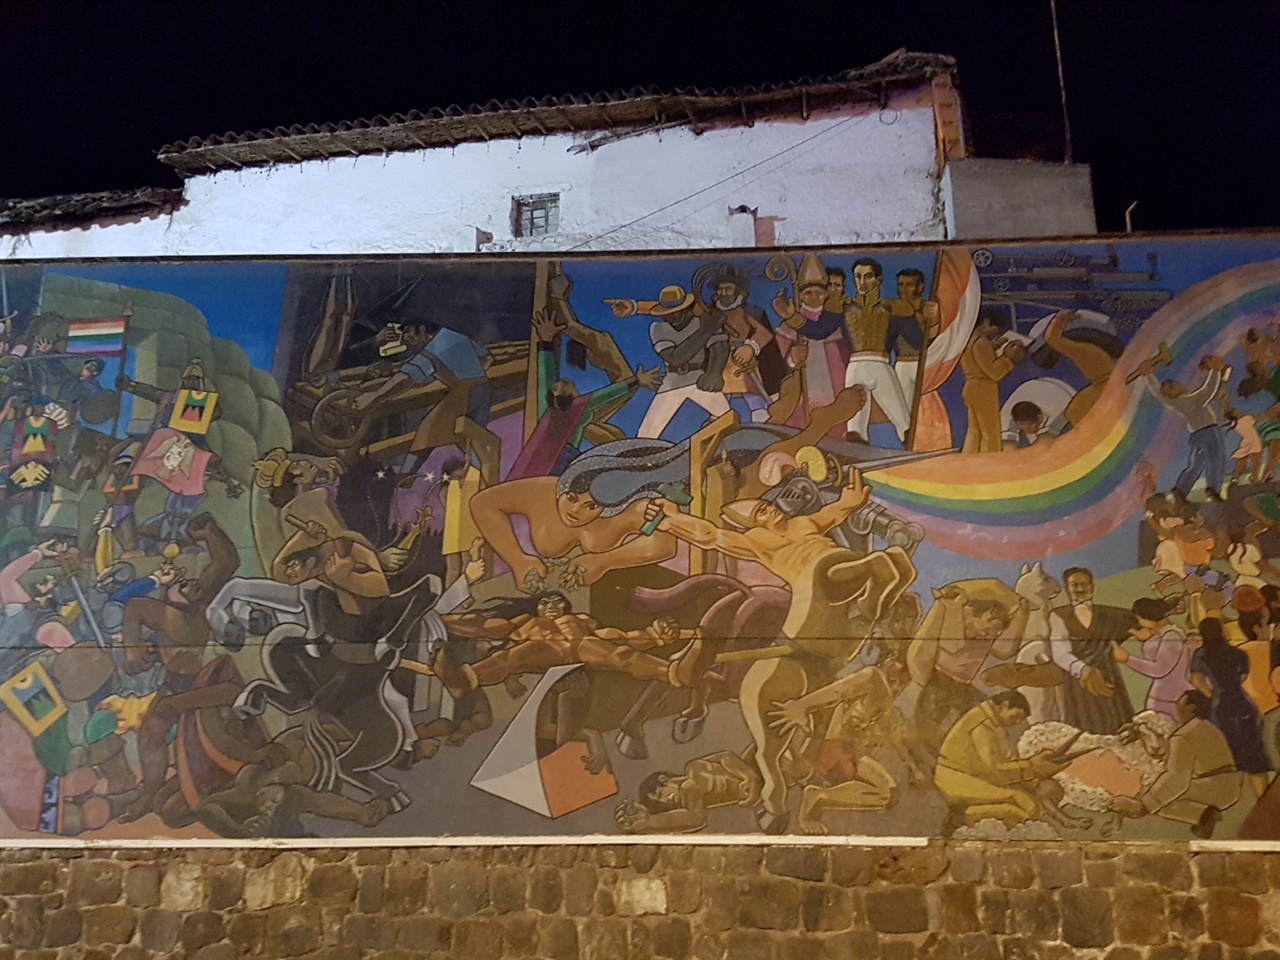 길거리에 있는 대형벽화이다. 잉카시대부터 스페인식민지 시절까지의 페루인들의 일상적 삶을 신화적 시각에서 페인팅한 것으로 생각된다.  